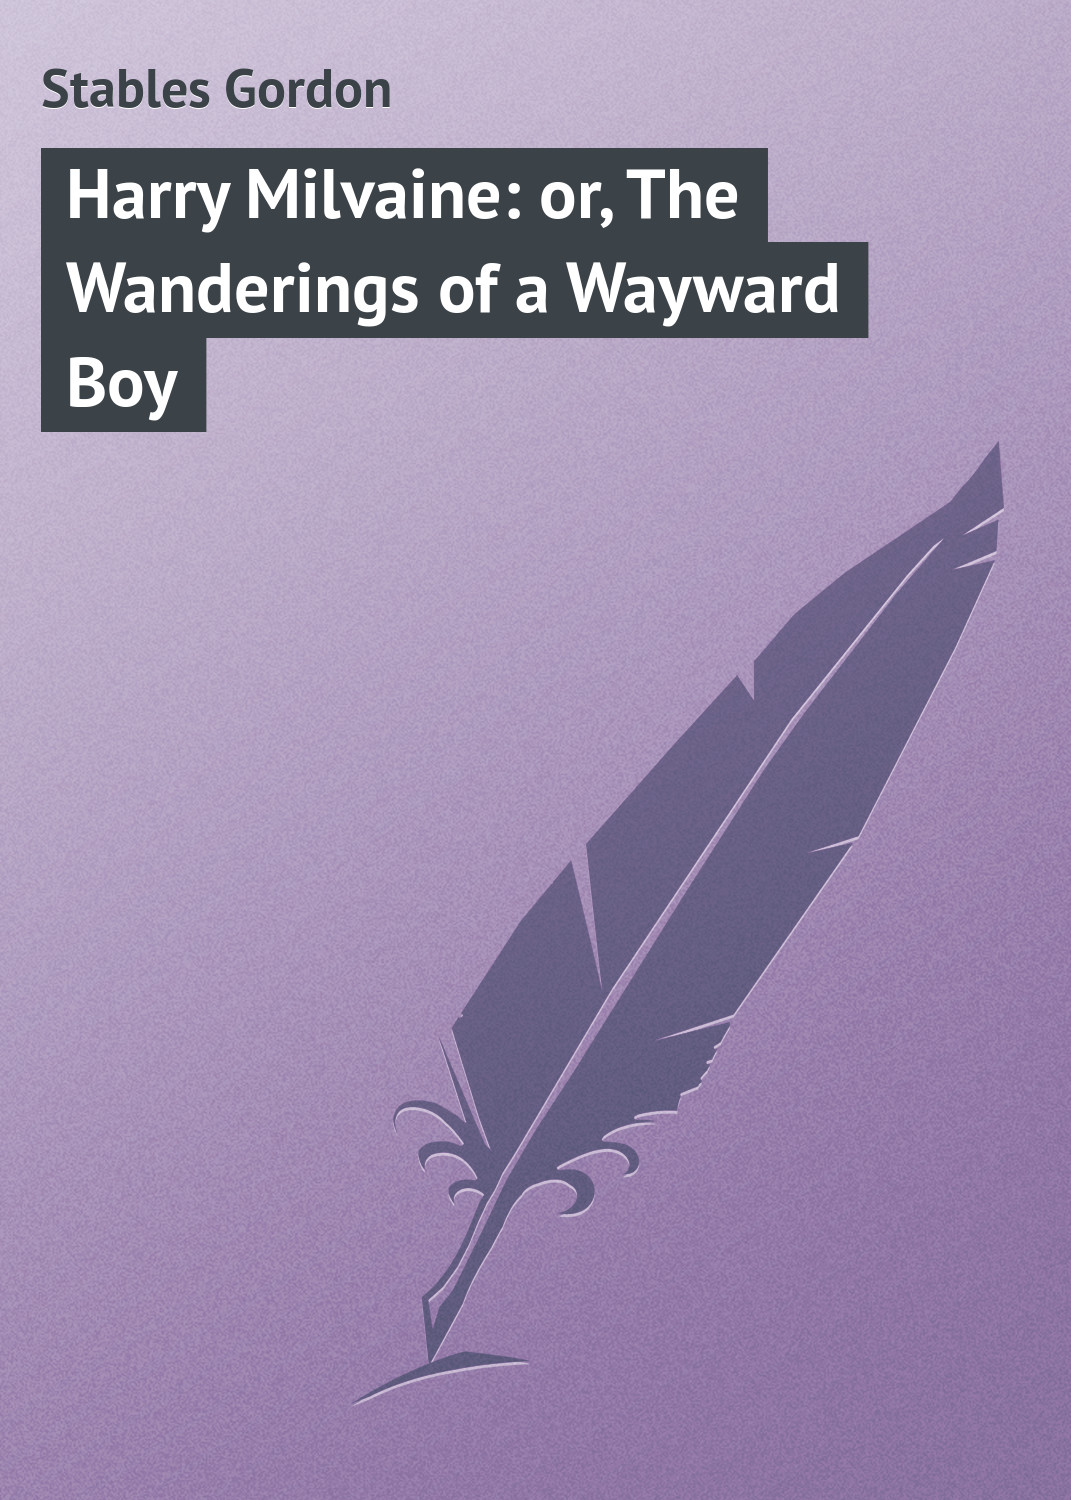 Книга Harry Milvaine: or, The Wanderings of a Wayward Boy из серии , созданная Gordon Stables, может относится к жанру Зарубежная классика, Зарубежные детские книги. Стоимость электронной книги Harry Milvaine: or, The Wanderings of a Wayward Boy с идентификатором 23149083 составляет 5.99 руб.